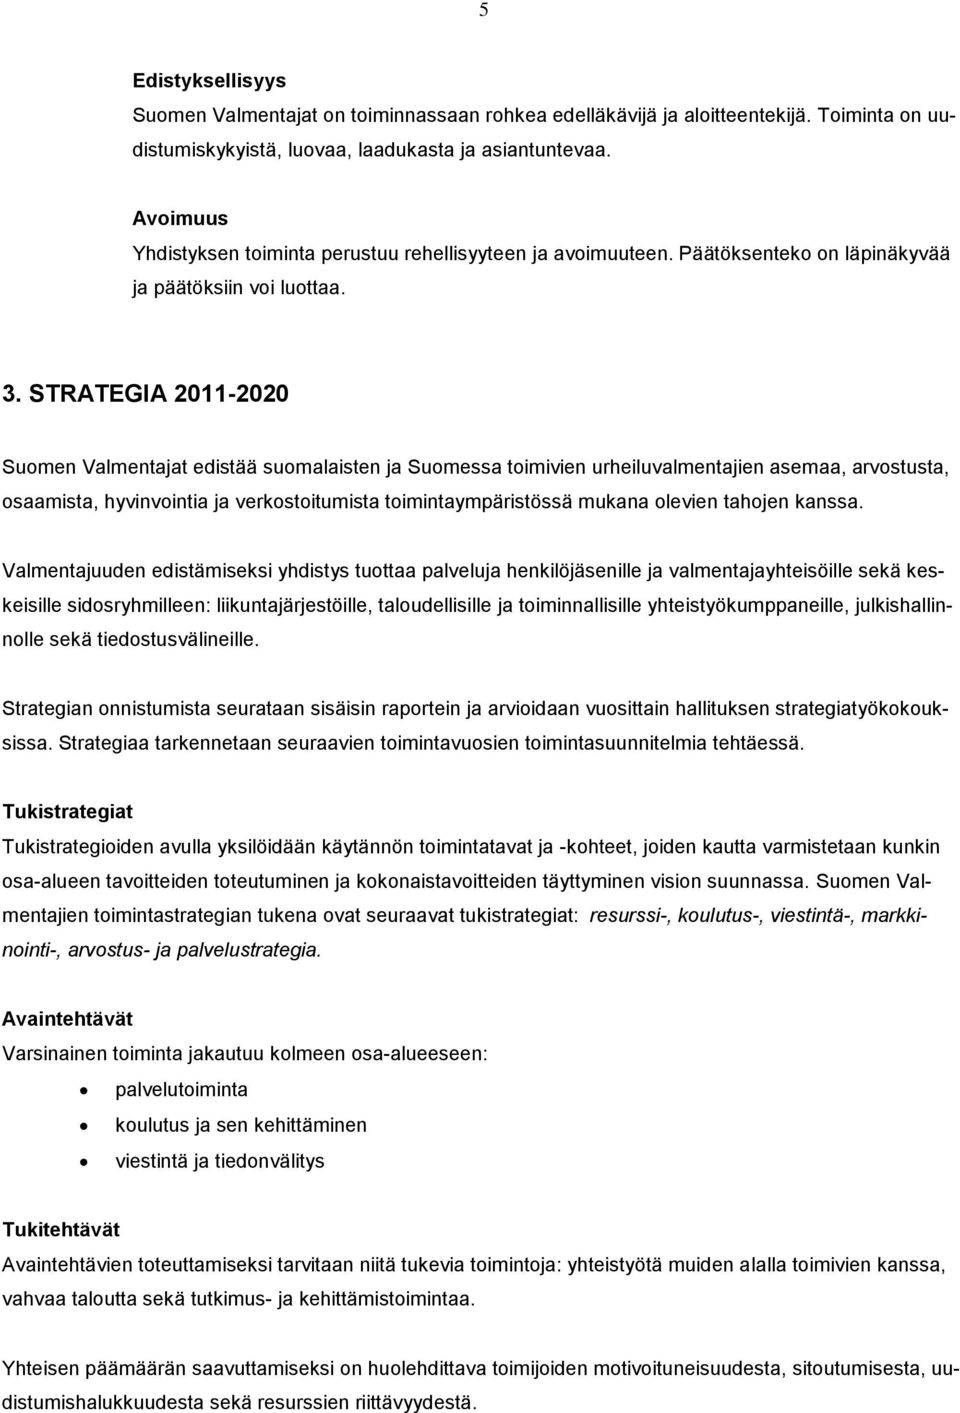 STRATEGIA 2011-2020 Suomen Valmentajat edistää suomalaisten ja Suomessa toimivien urheiluvalmentajien asemaa, arvostusta, osaamista, hyvinvointia ja verkostoitumista toimintaympäristössä mukana